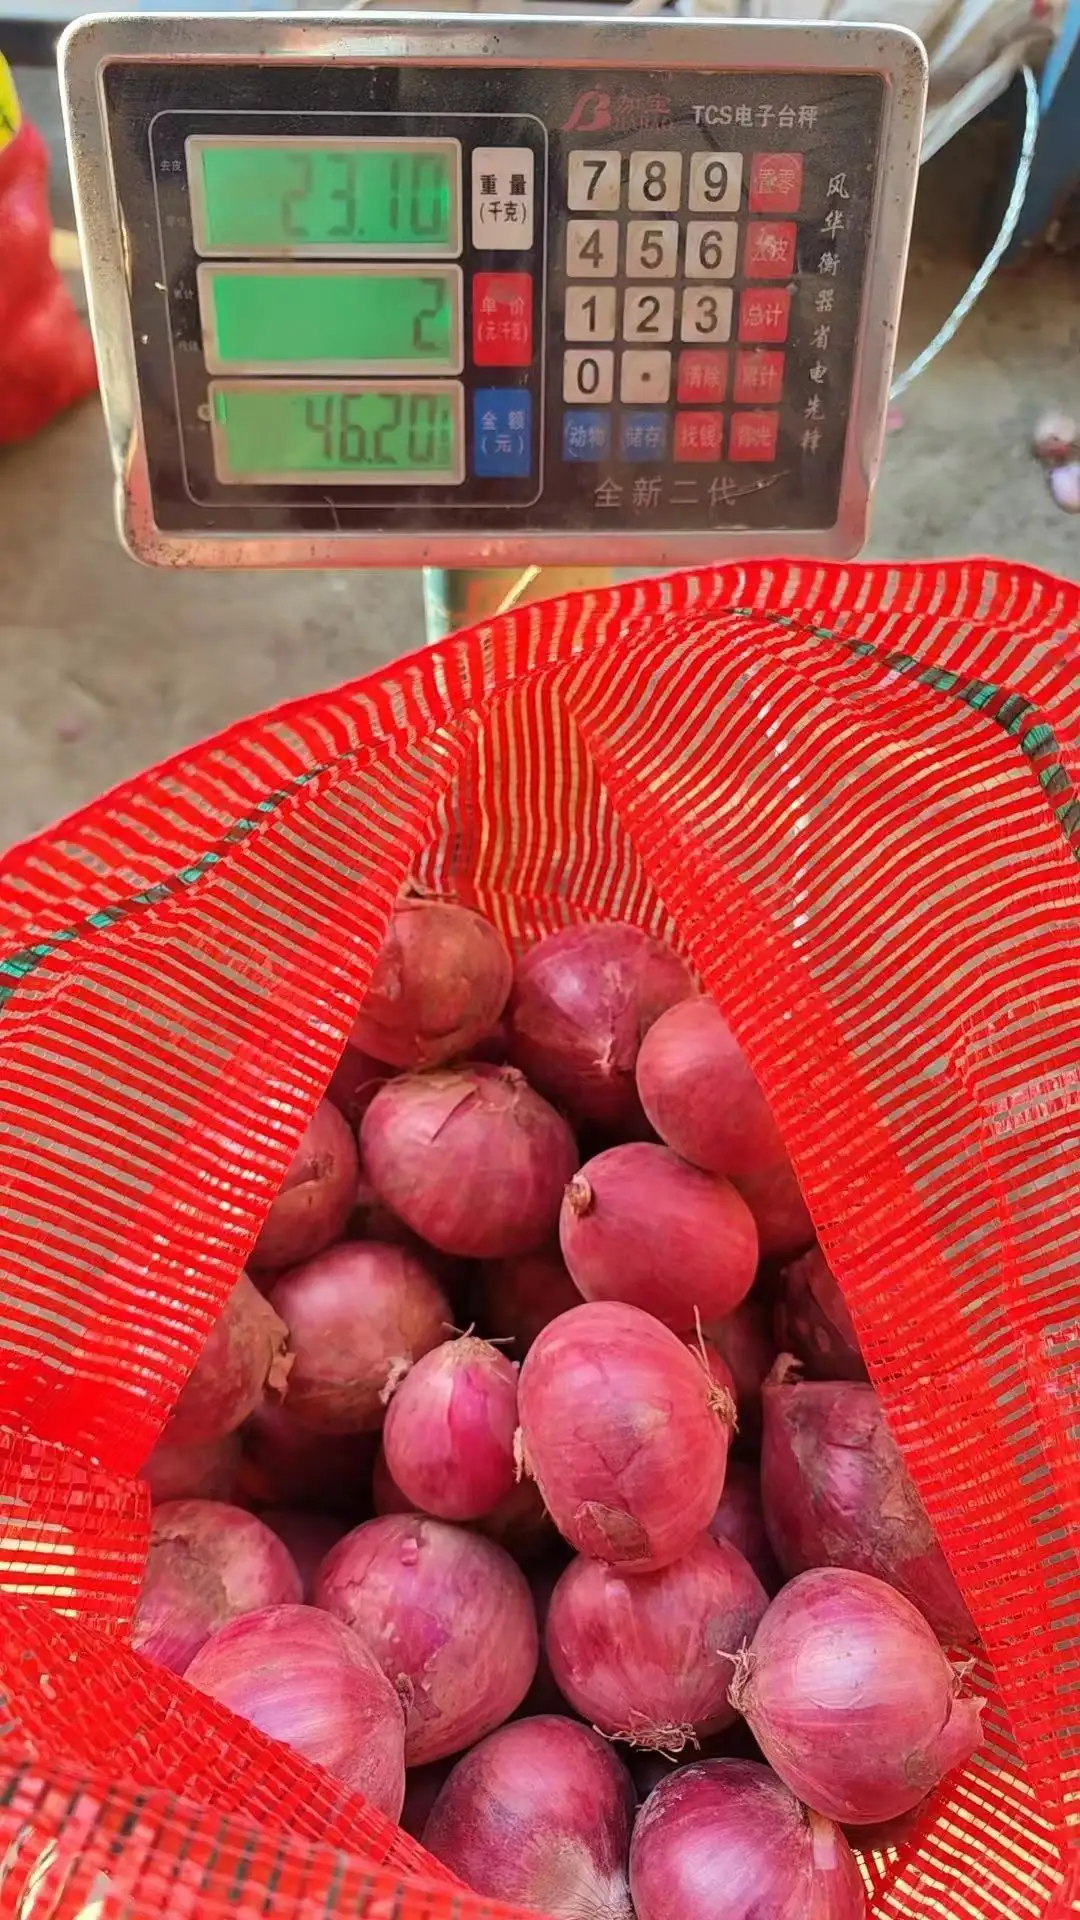 Nova safra chinesa cebola amarela fresca e cebola vermelha embalagem 10 kg mercado preço